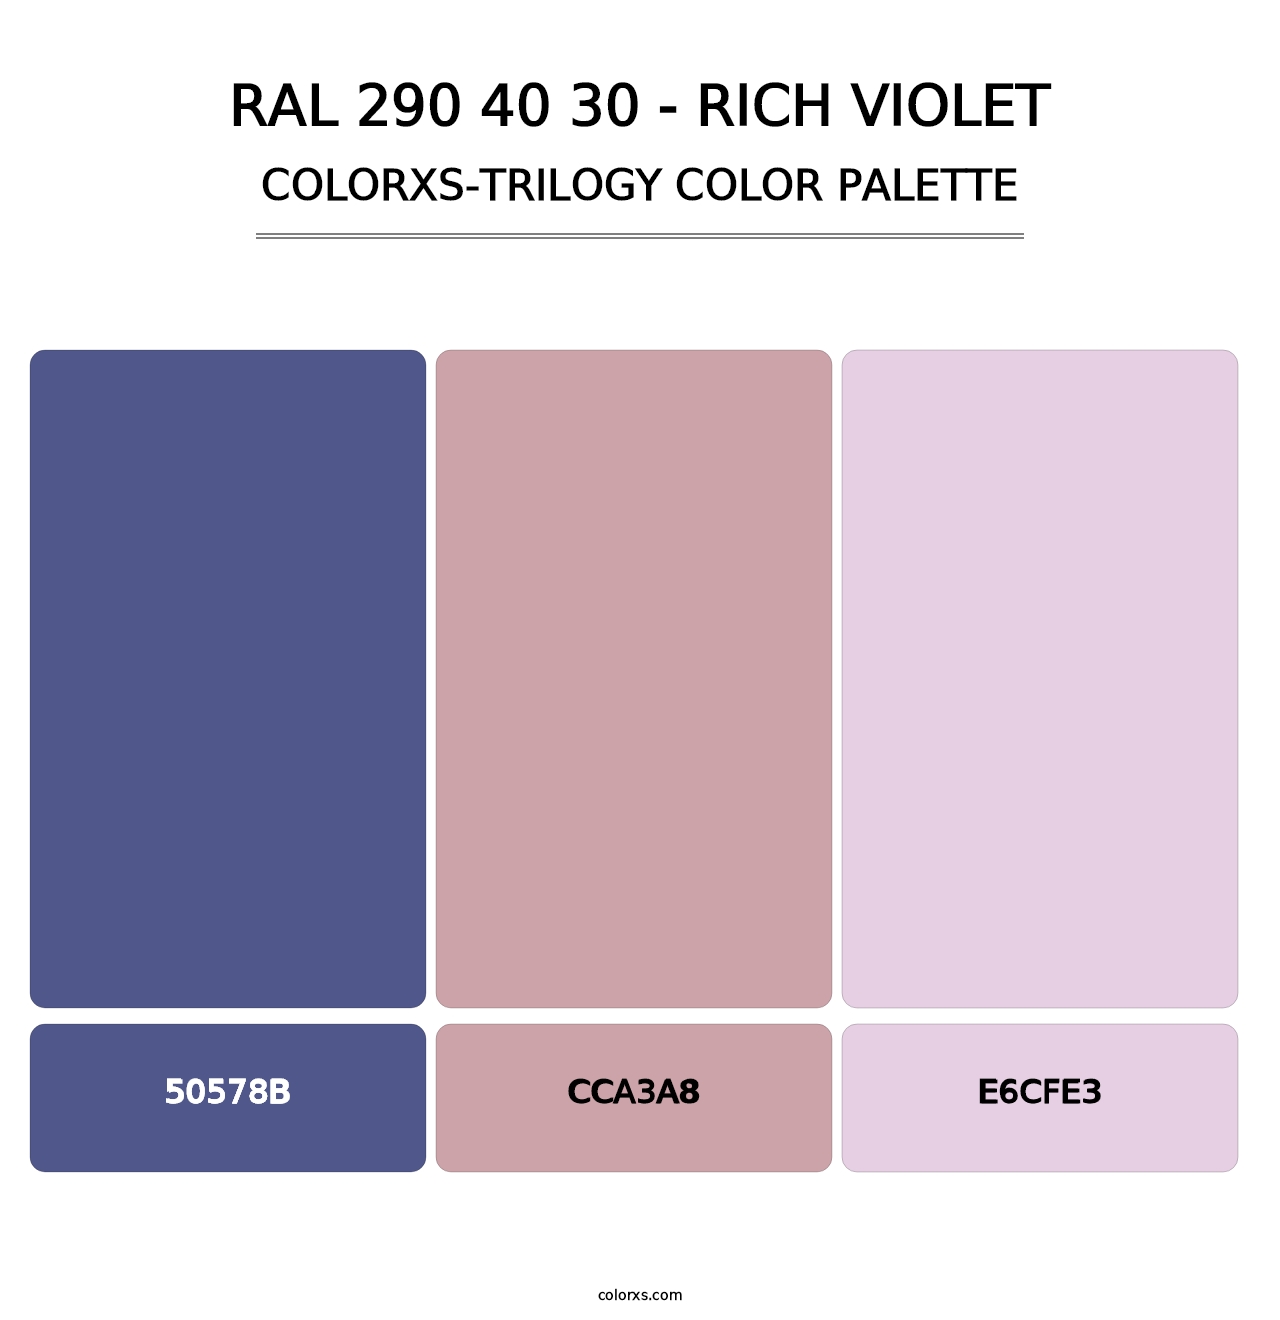 RAL 290 40 30 - Rich Violet - Colorxs Trilogy Palette